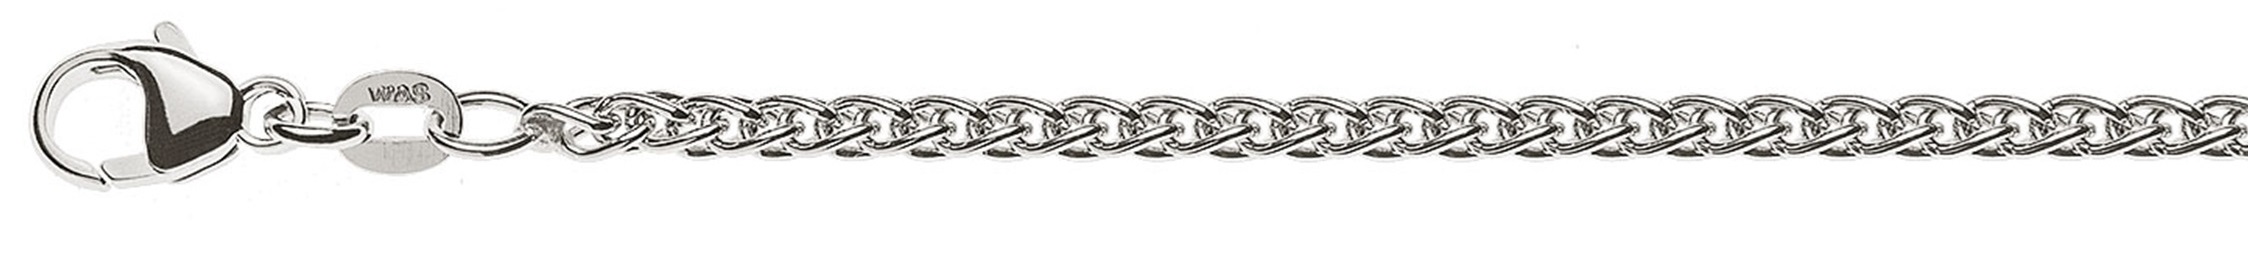 AURONOS Prestige Necklace white gold 18K cable chain 45cm 2.5mm